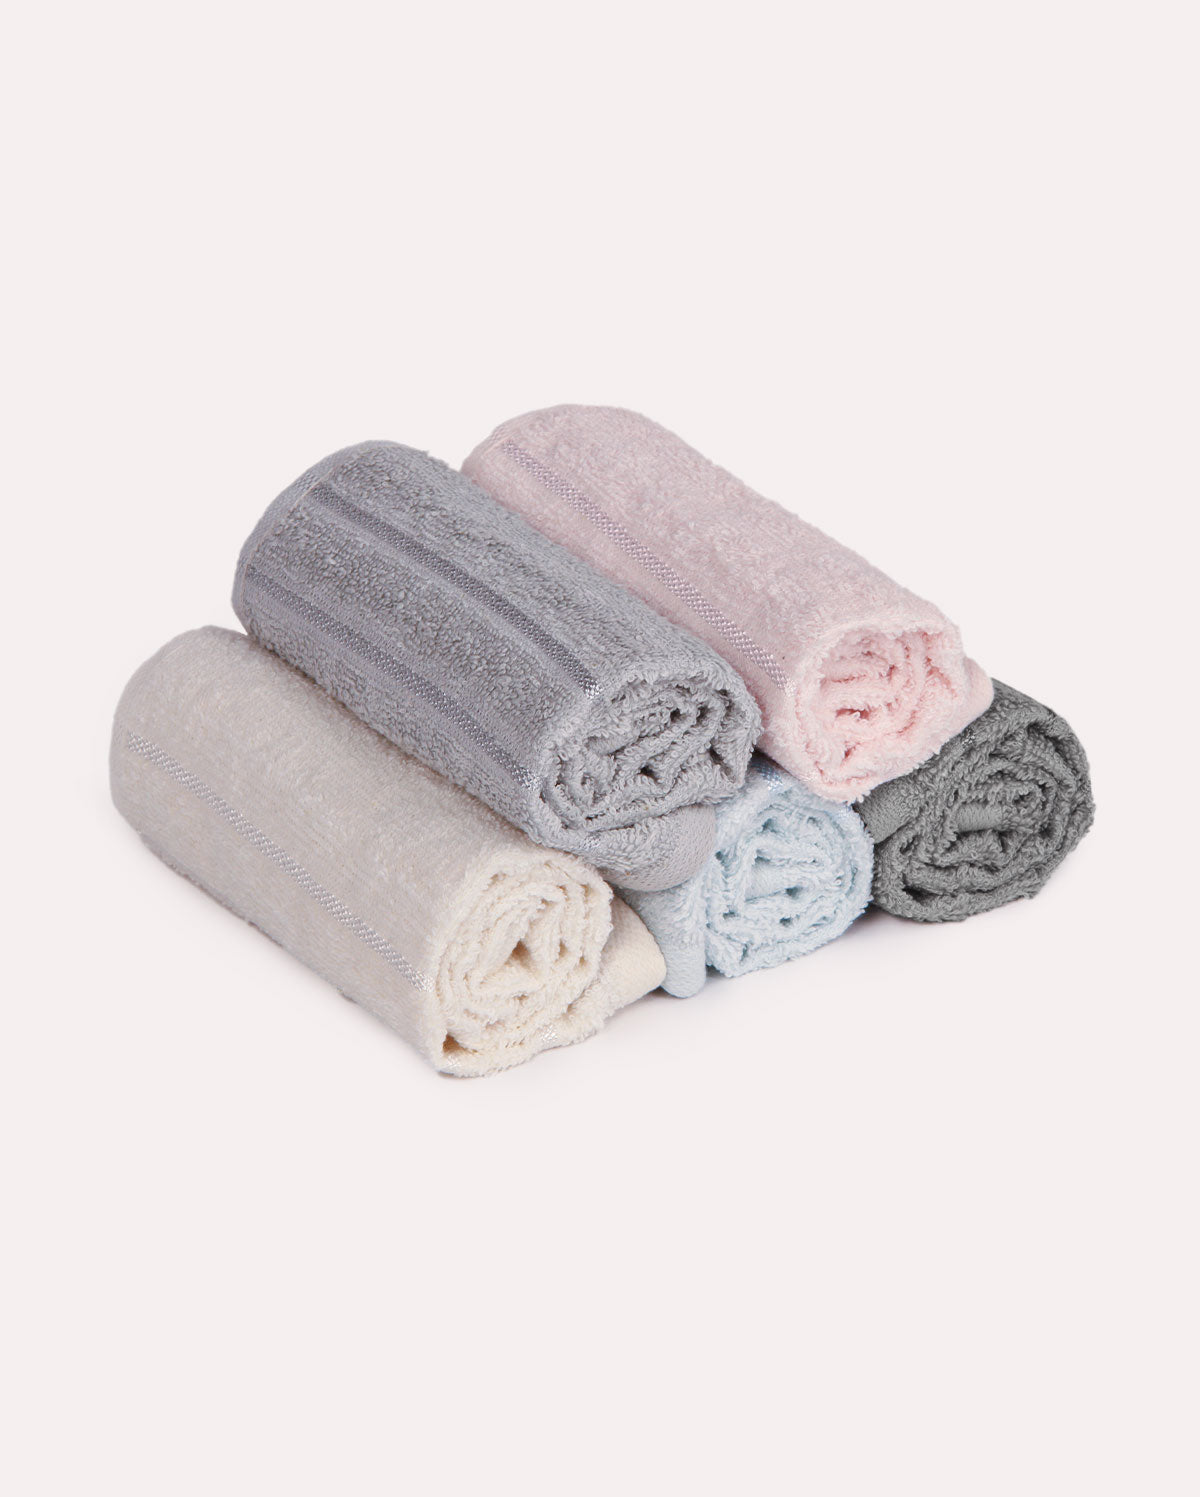 Cotton Face Towel Set (5 Towels)